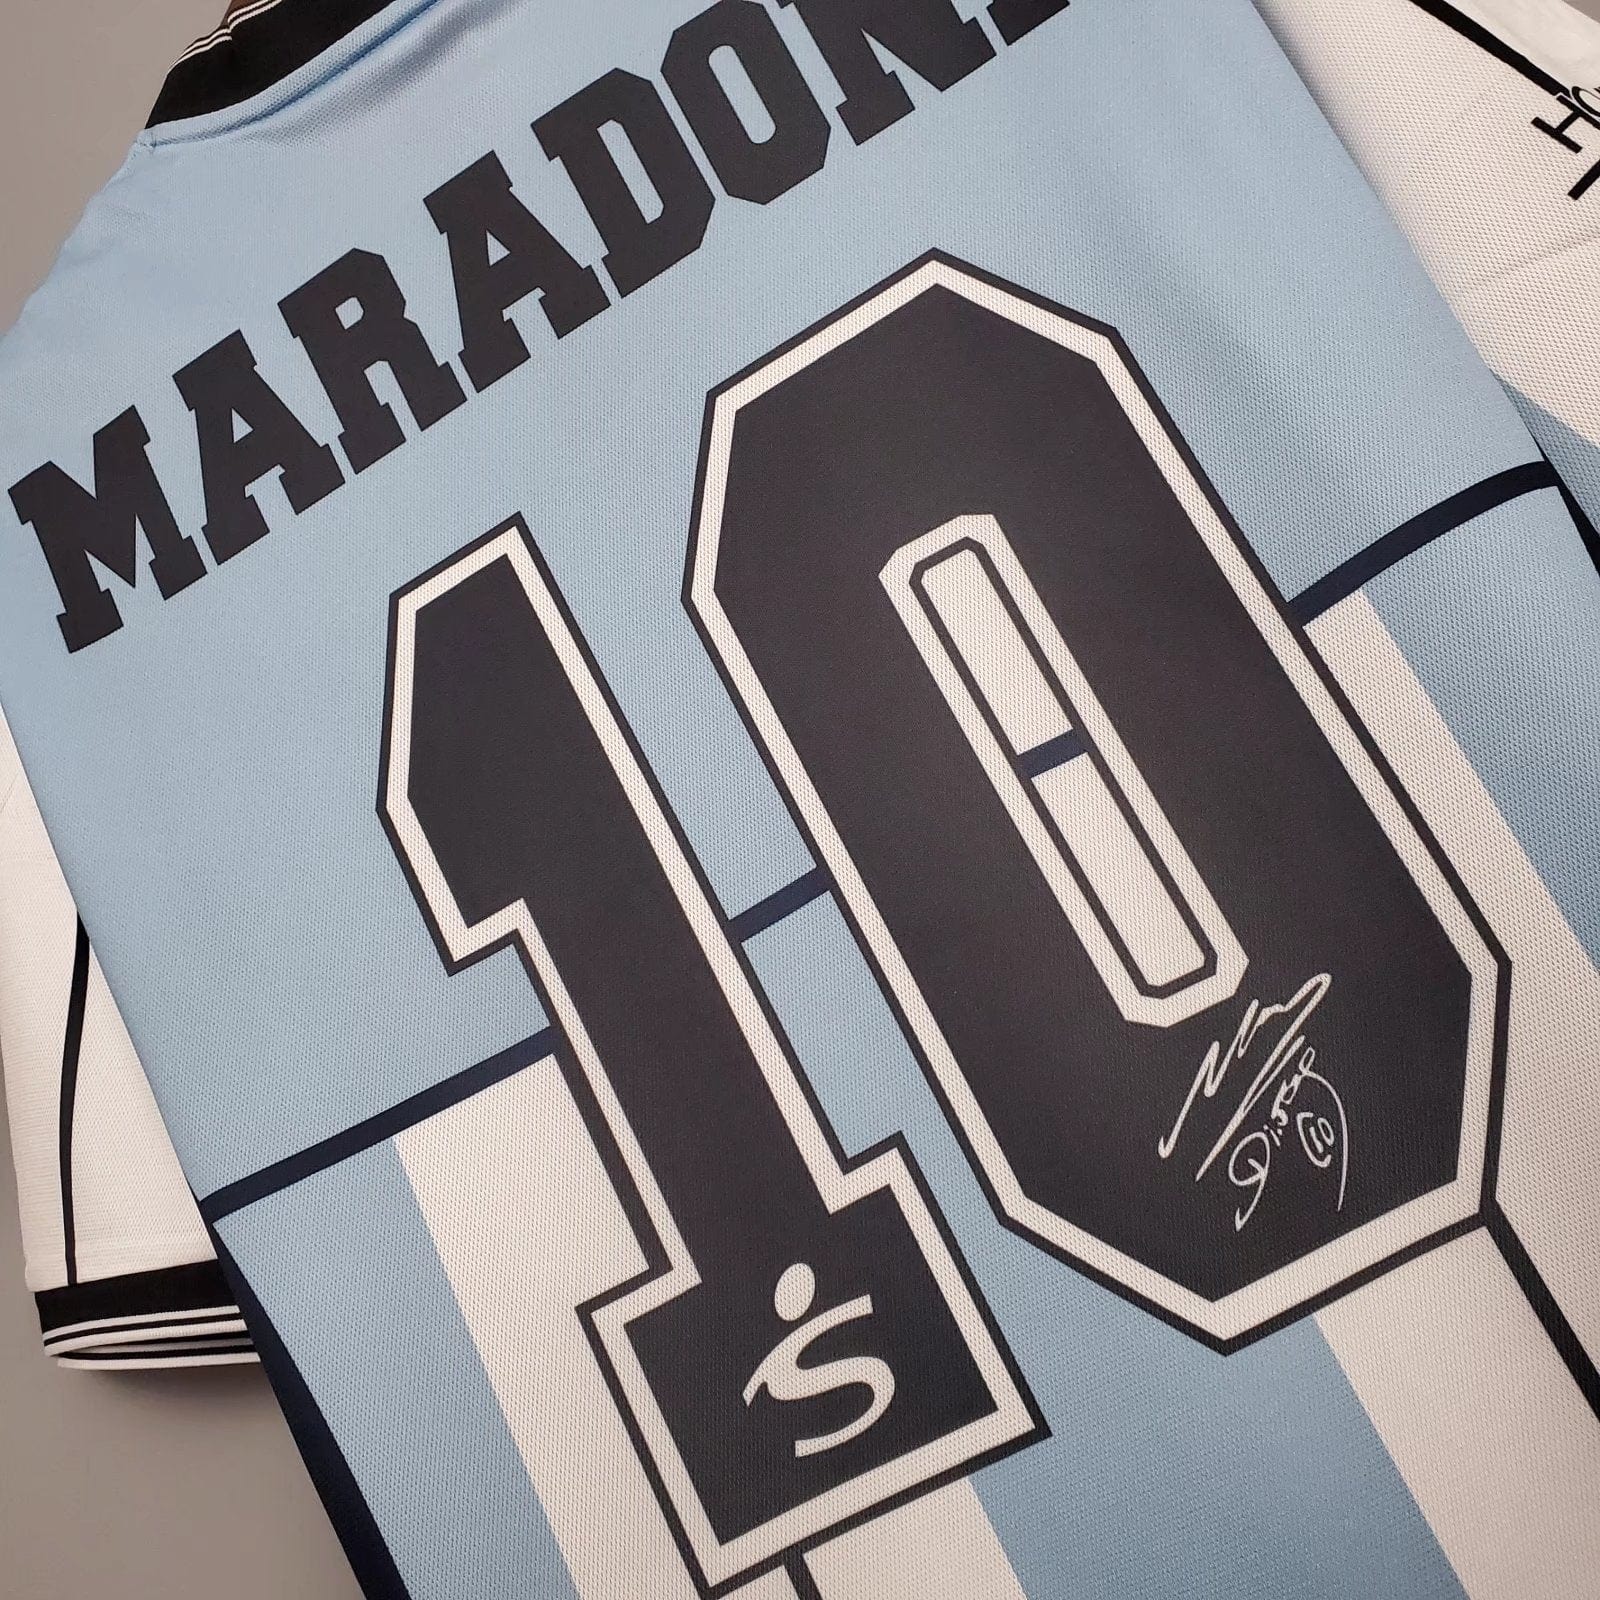 2001 Maradona Argentina Home Jersey - Football Classic